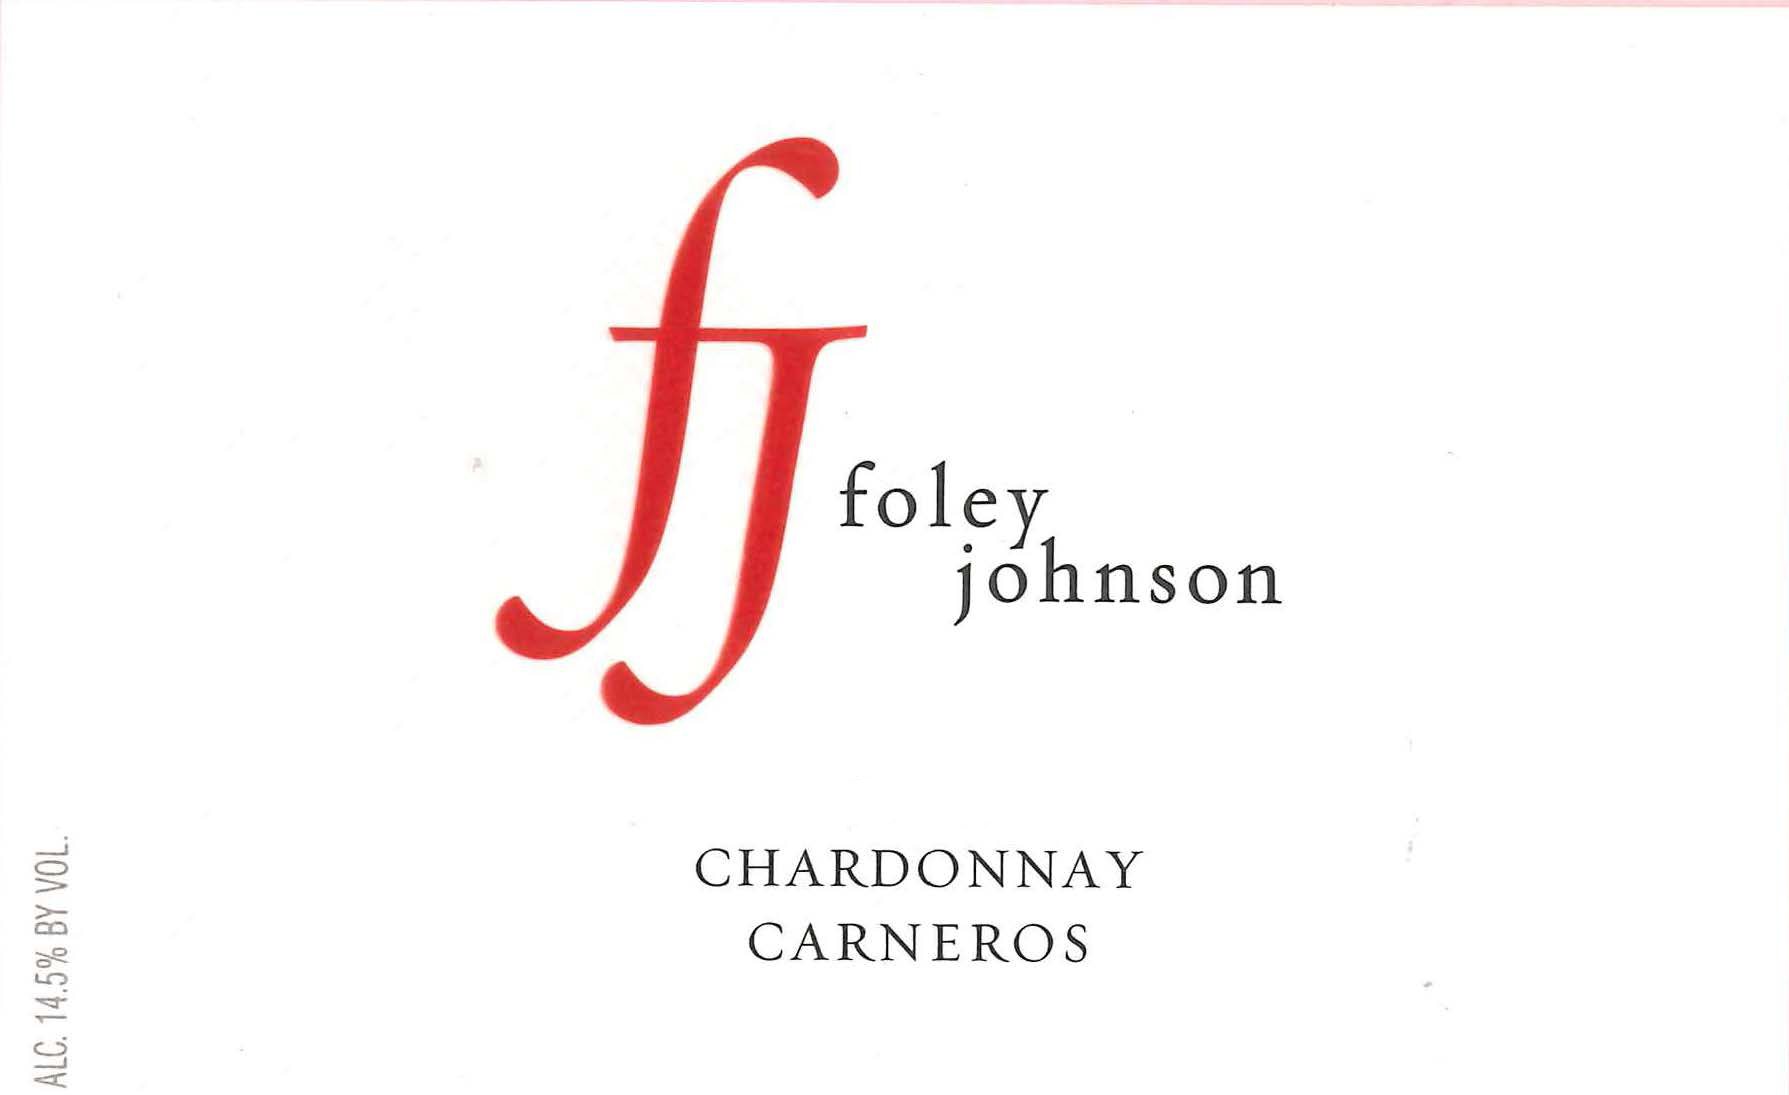 Foley Johnson - Carneros Sonoma County - Chardonnay label